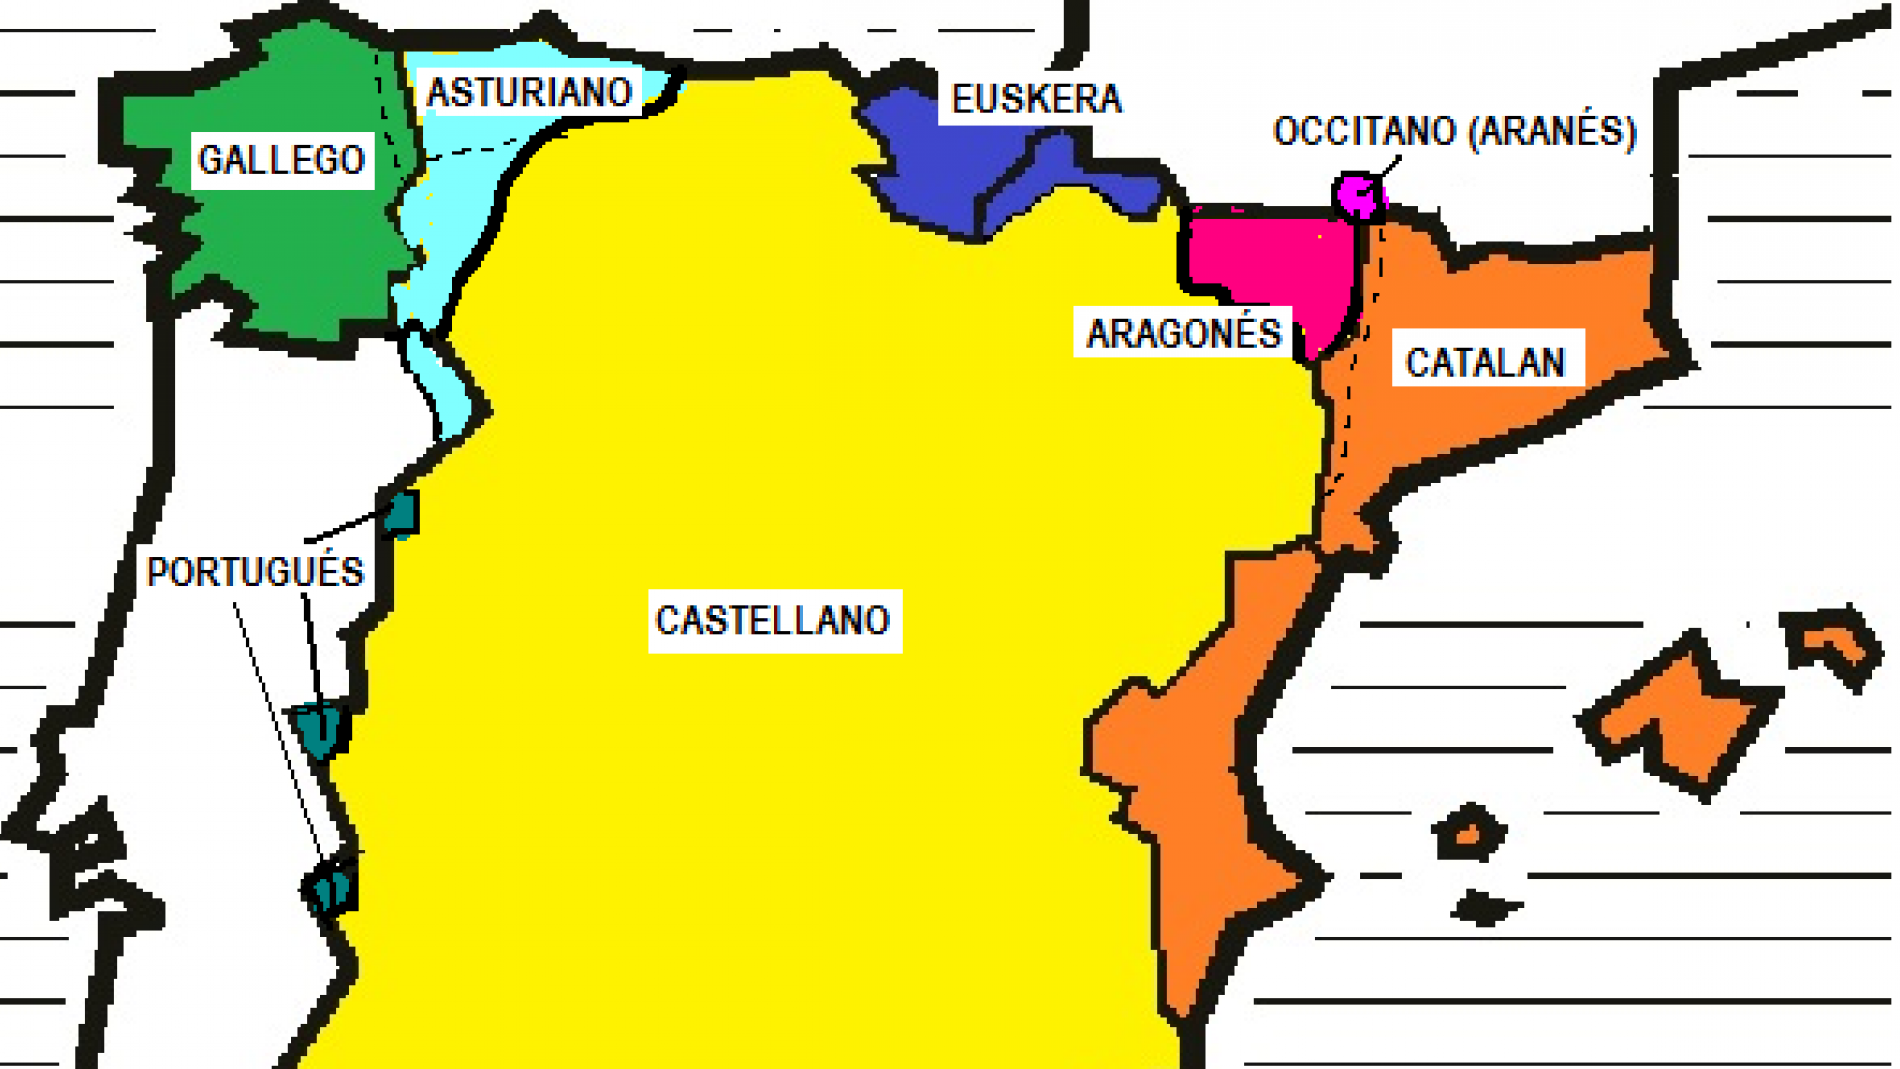 Cuáles son las diferencias entre el español y catalán?